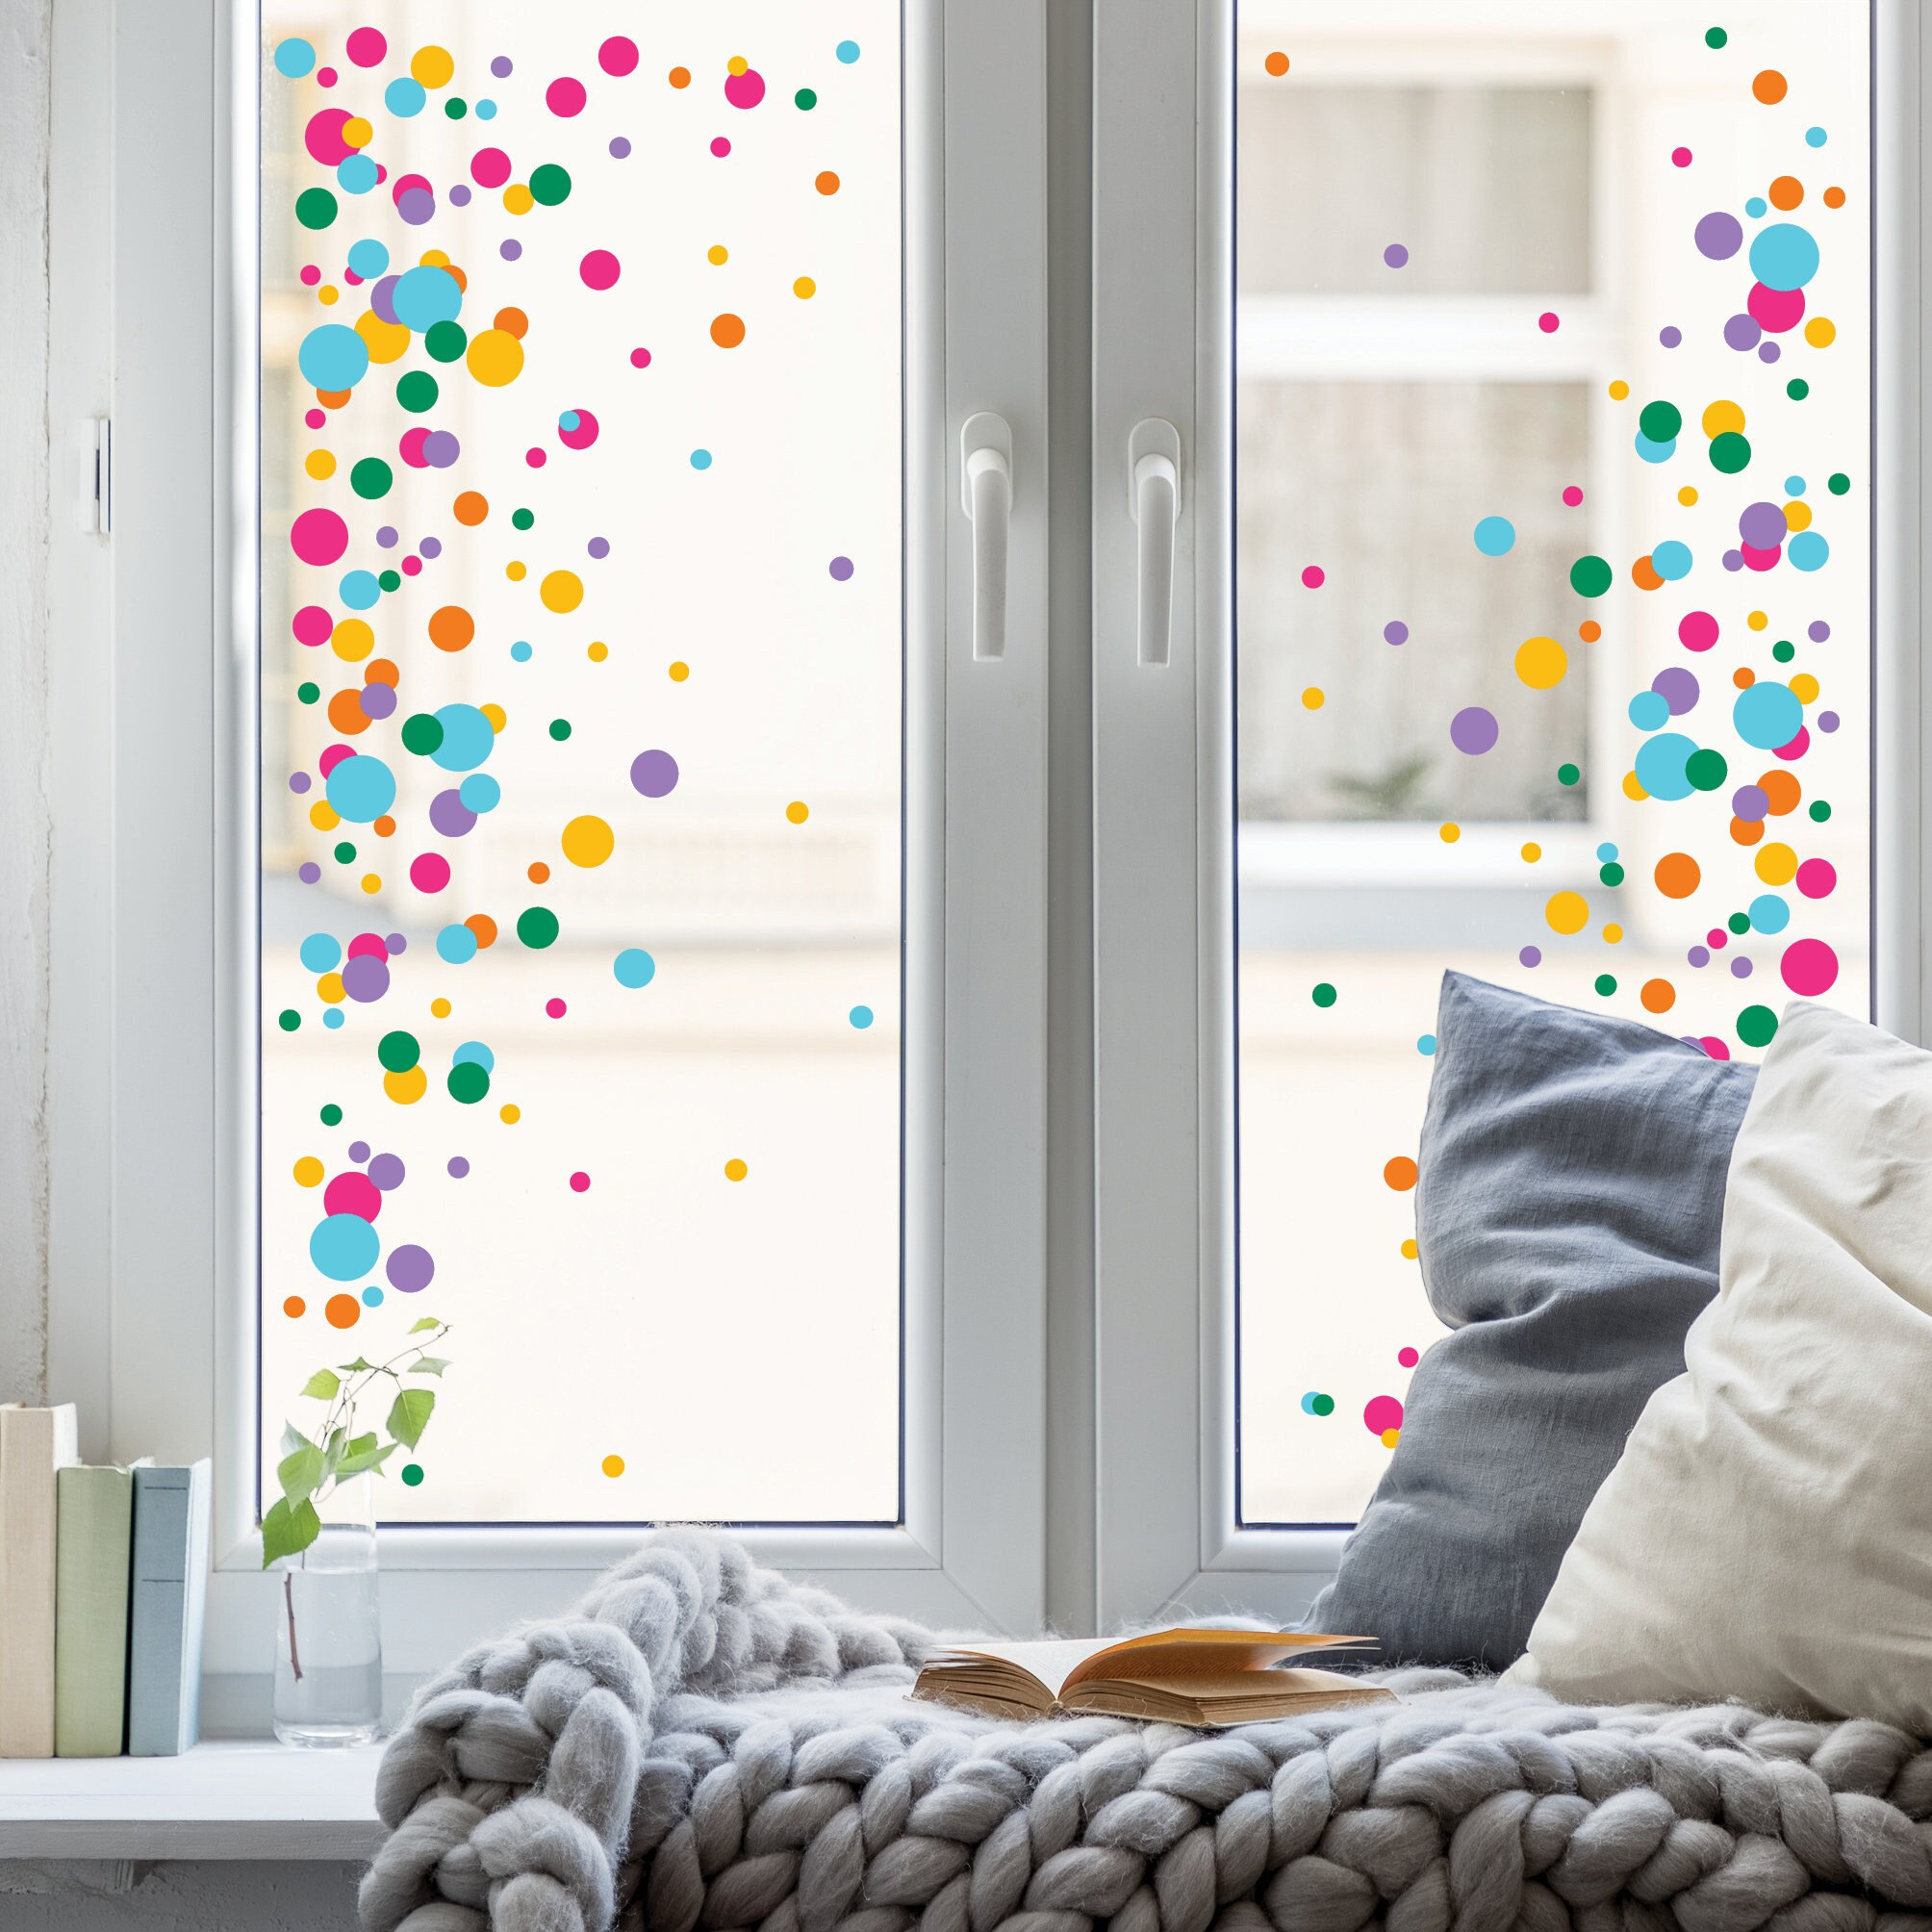 Fensterbild Konfetti Karneval Farbspritzer wiederverwendbar Frühling bunte Punkte Fasching farbige Kreise